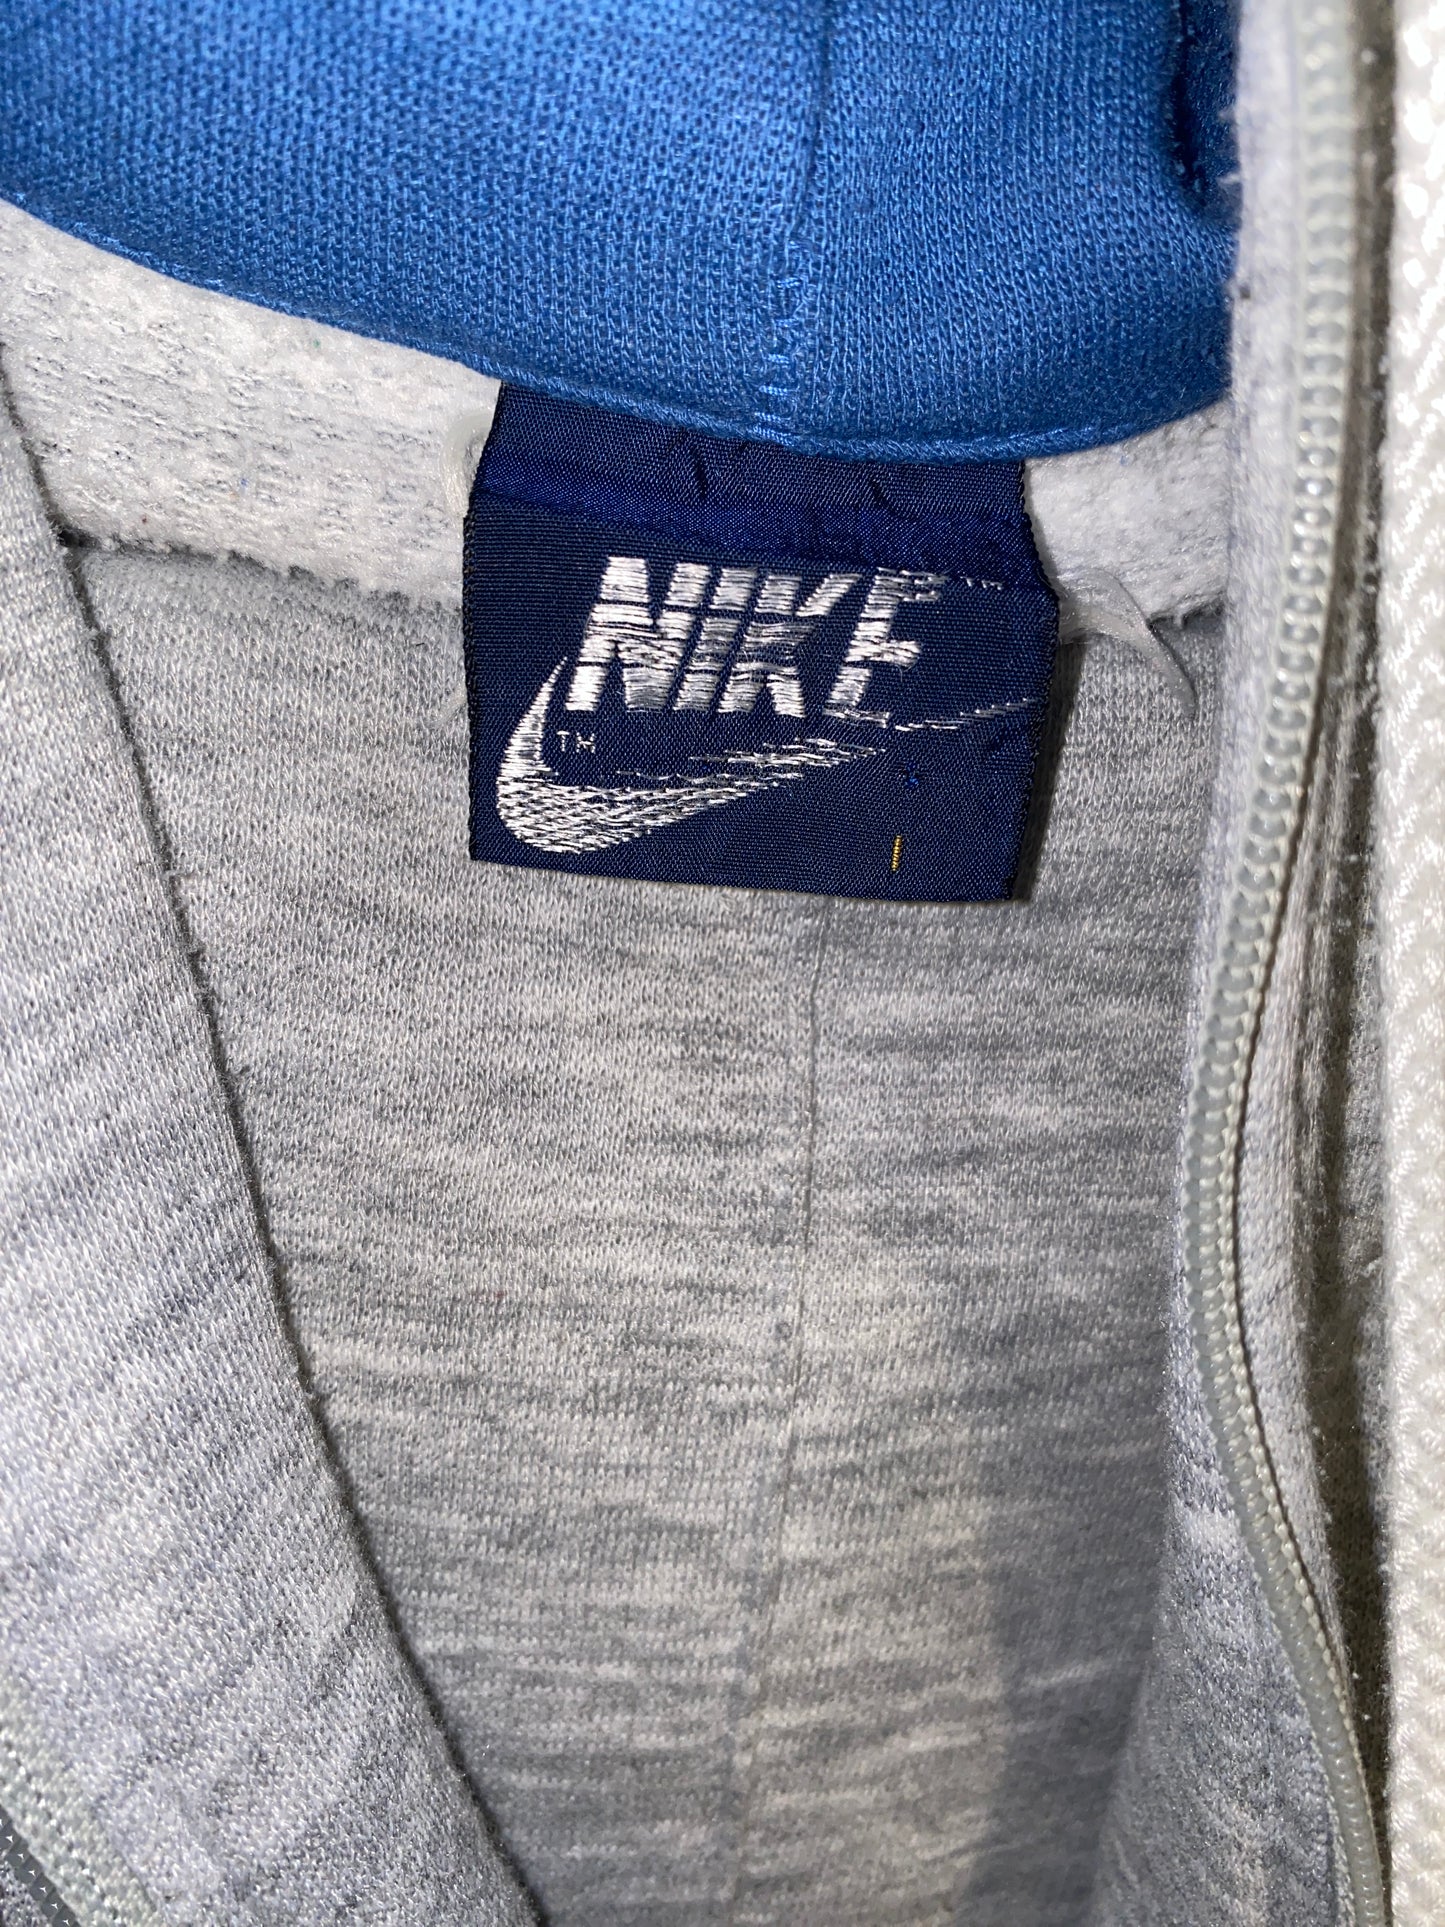 Vintage Nike Blue Label Sweat Suit w Hoodie